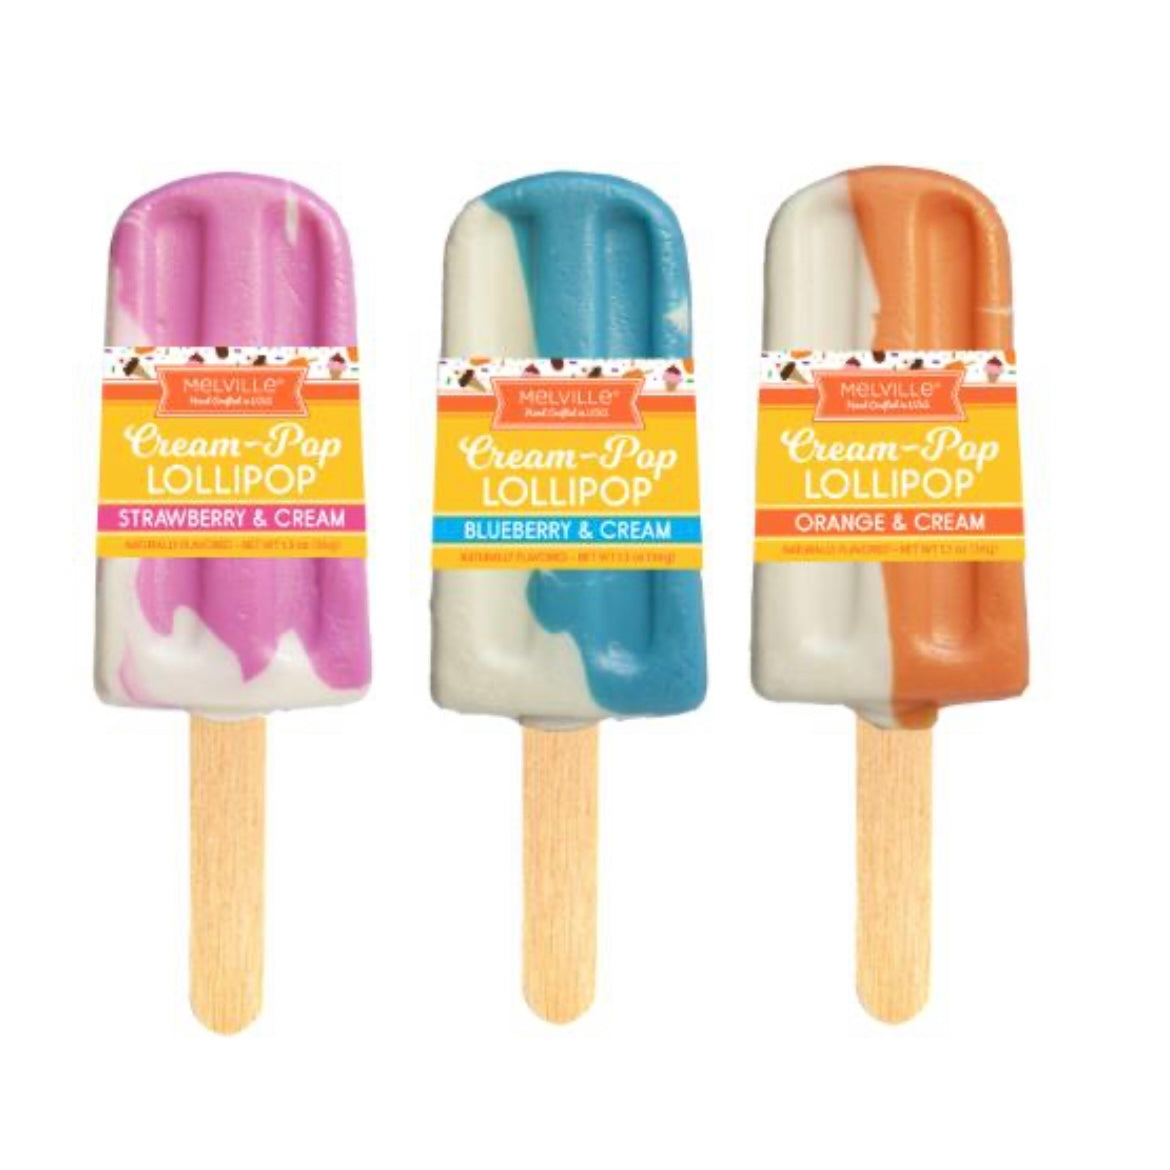 Cream-Pop Lollipops